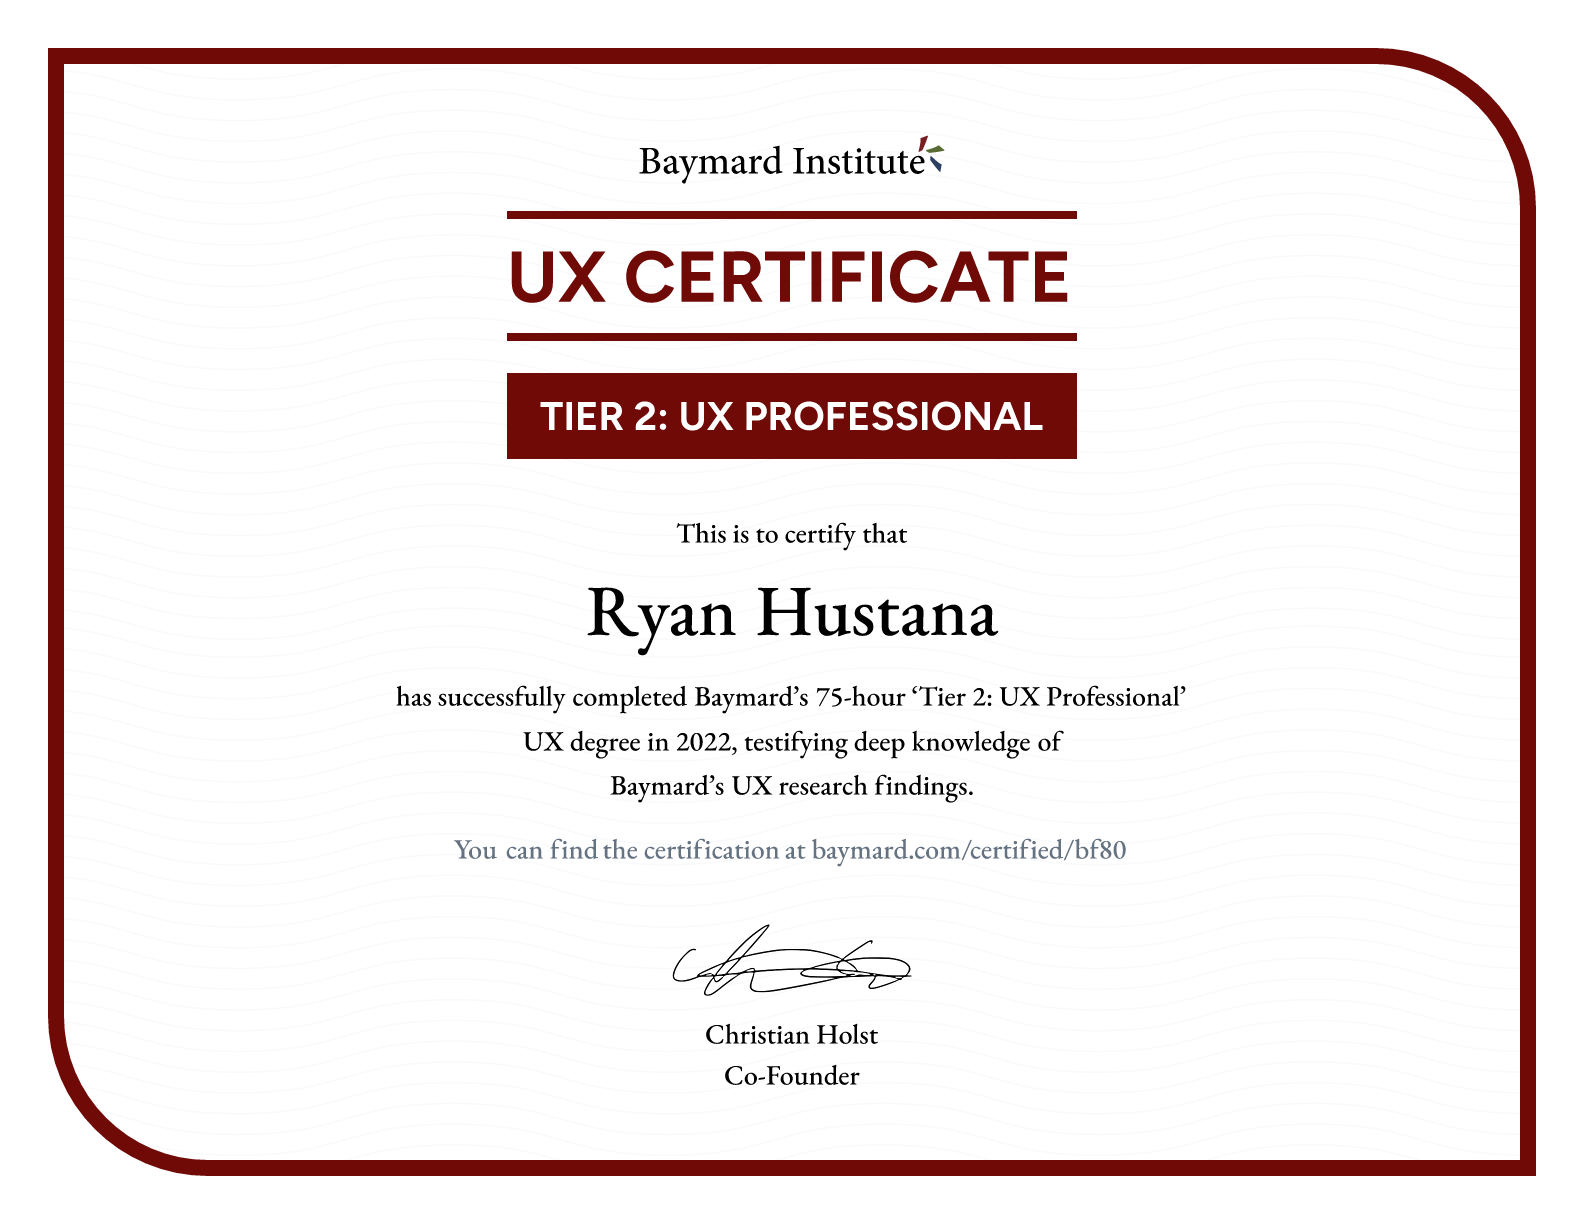 Ryan Hustana’s certificate